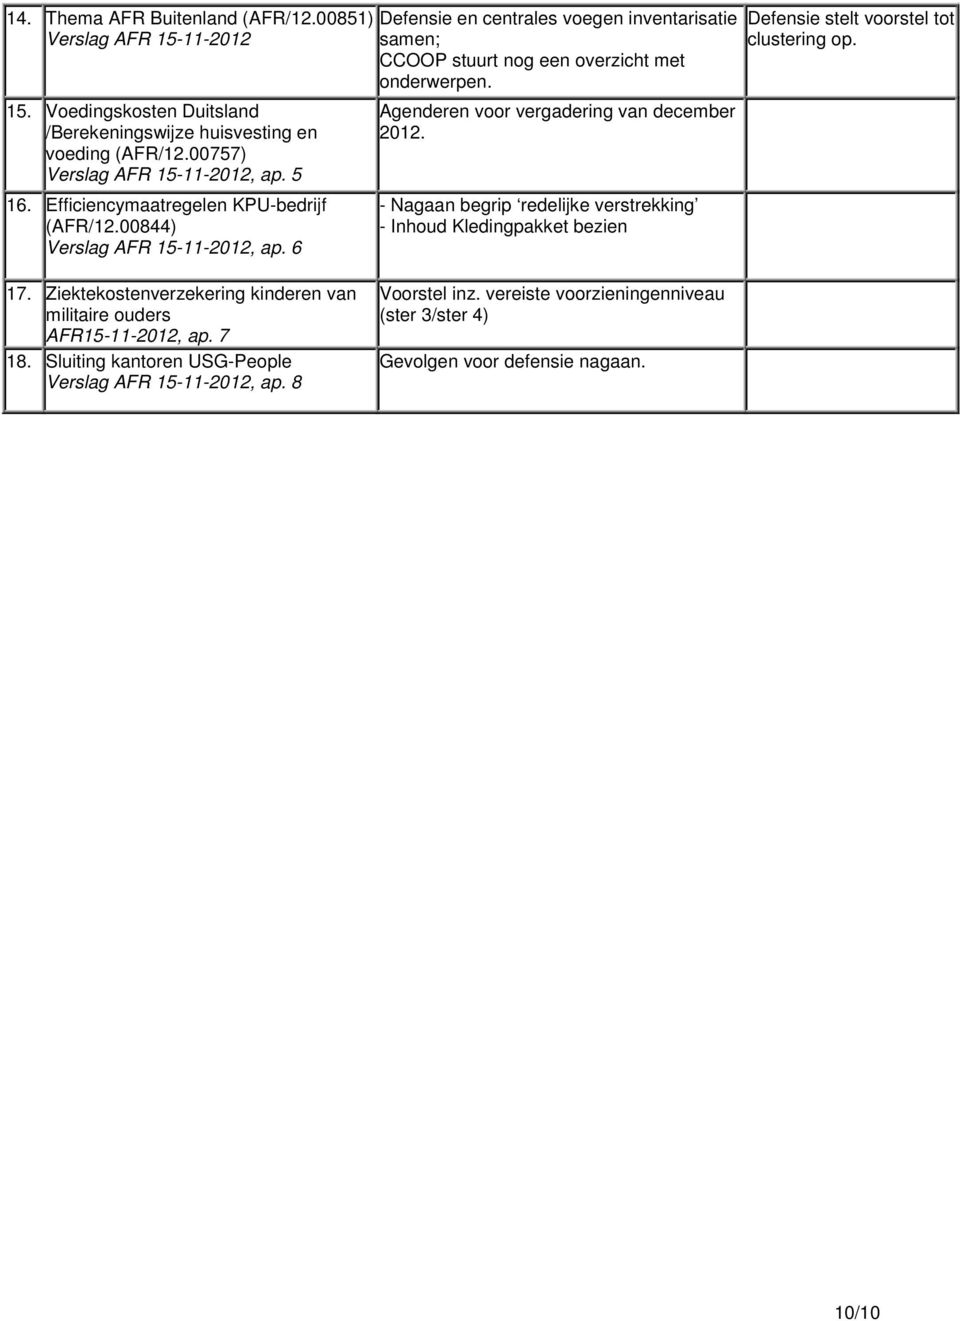 Agenderen voor vergadering van december 2012. - Nagaan begrip redelijke verstrekking - Inhoud Kledingpakket bezien Defensie stelt voorstel tot clustering op. 17.